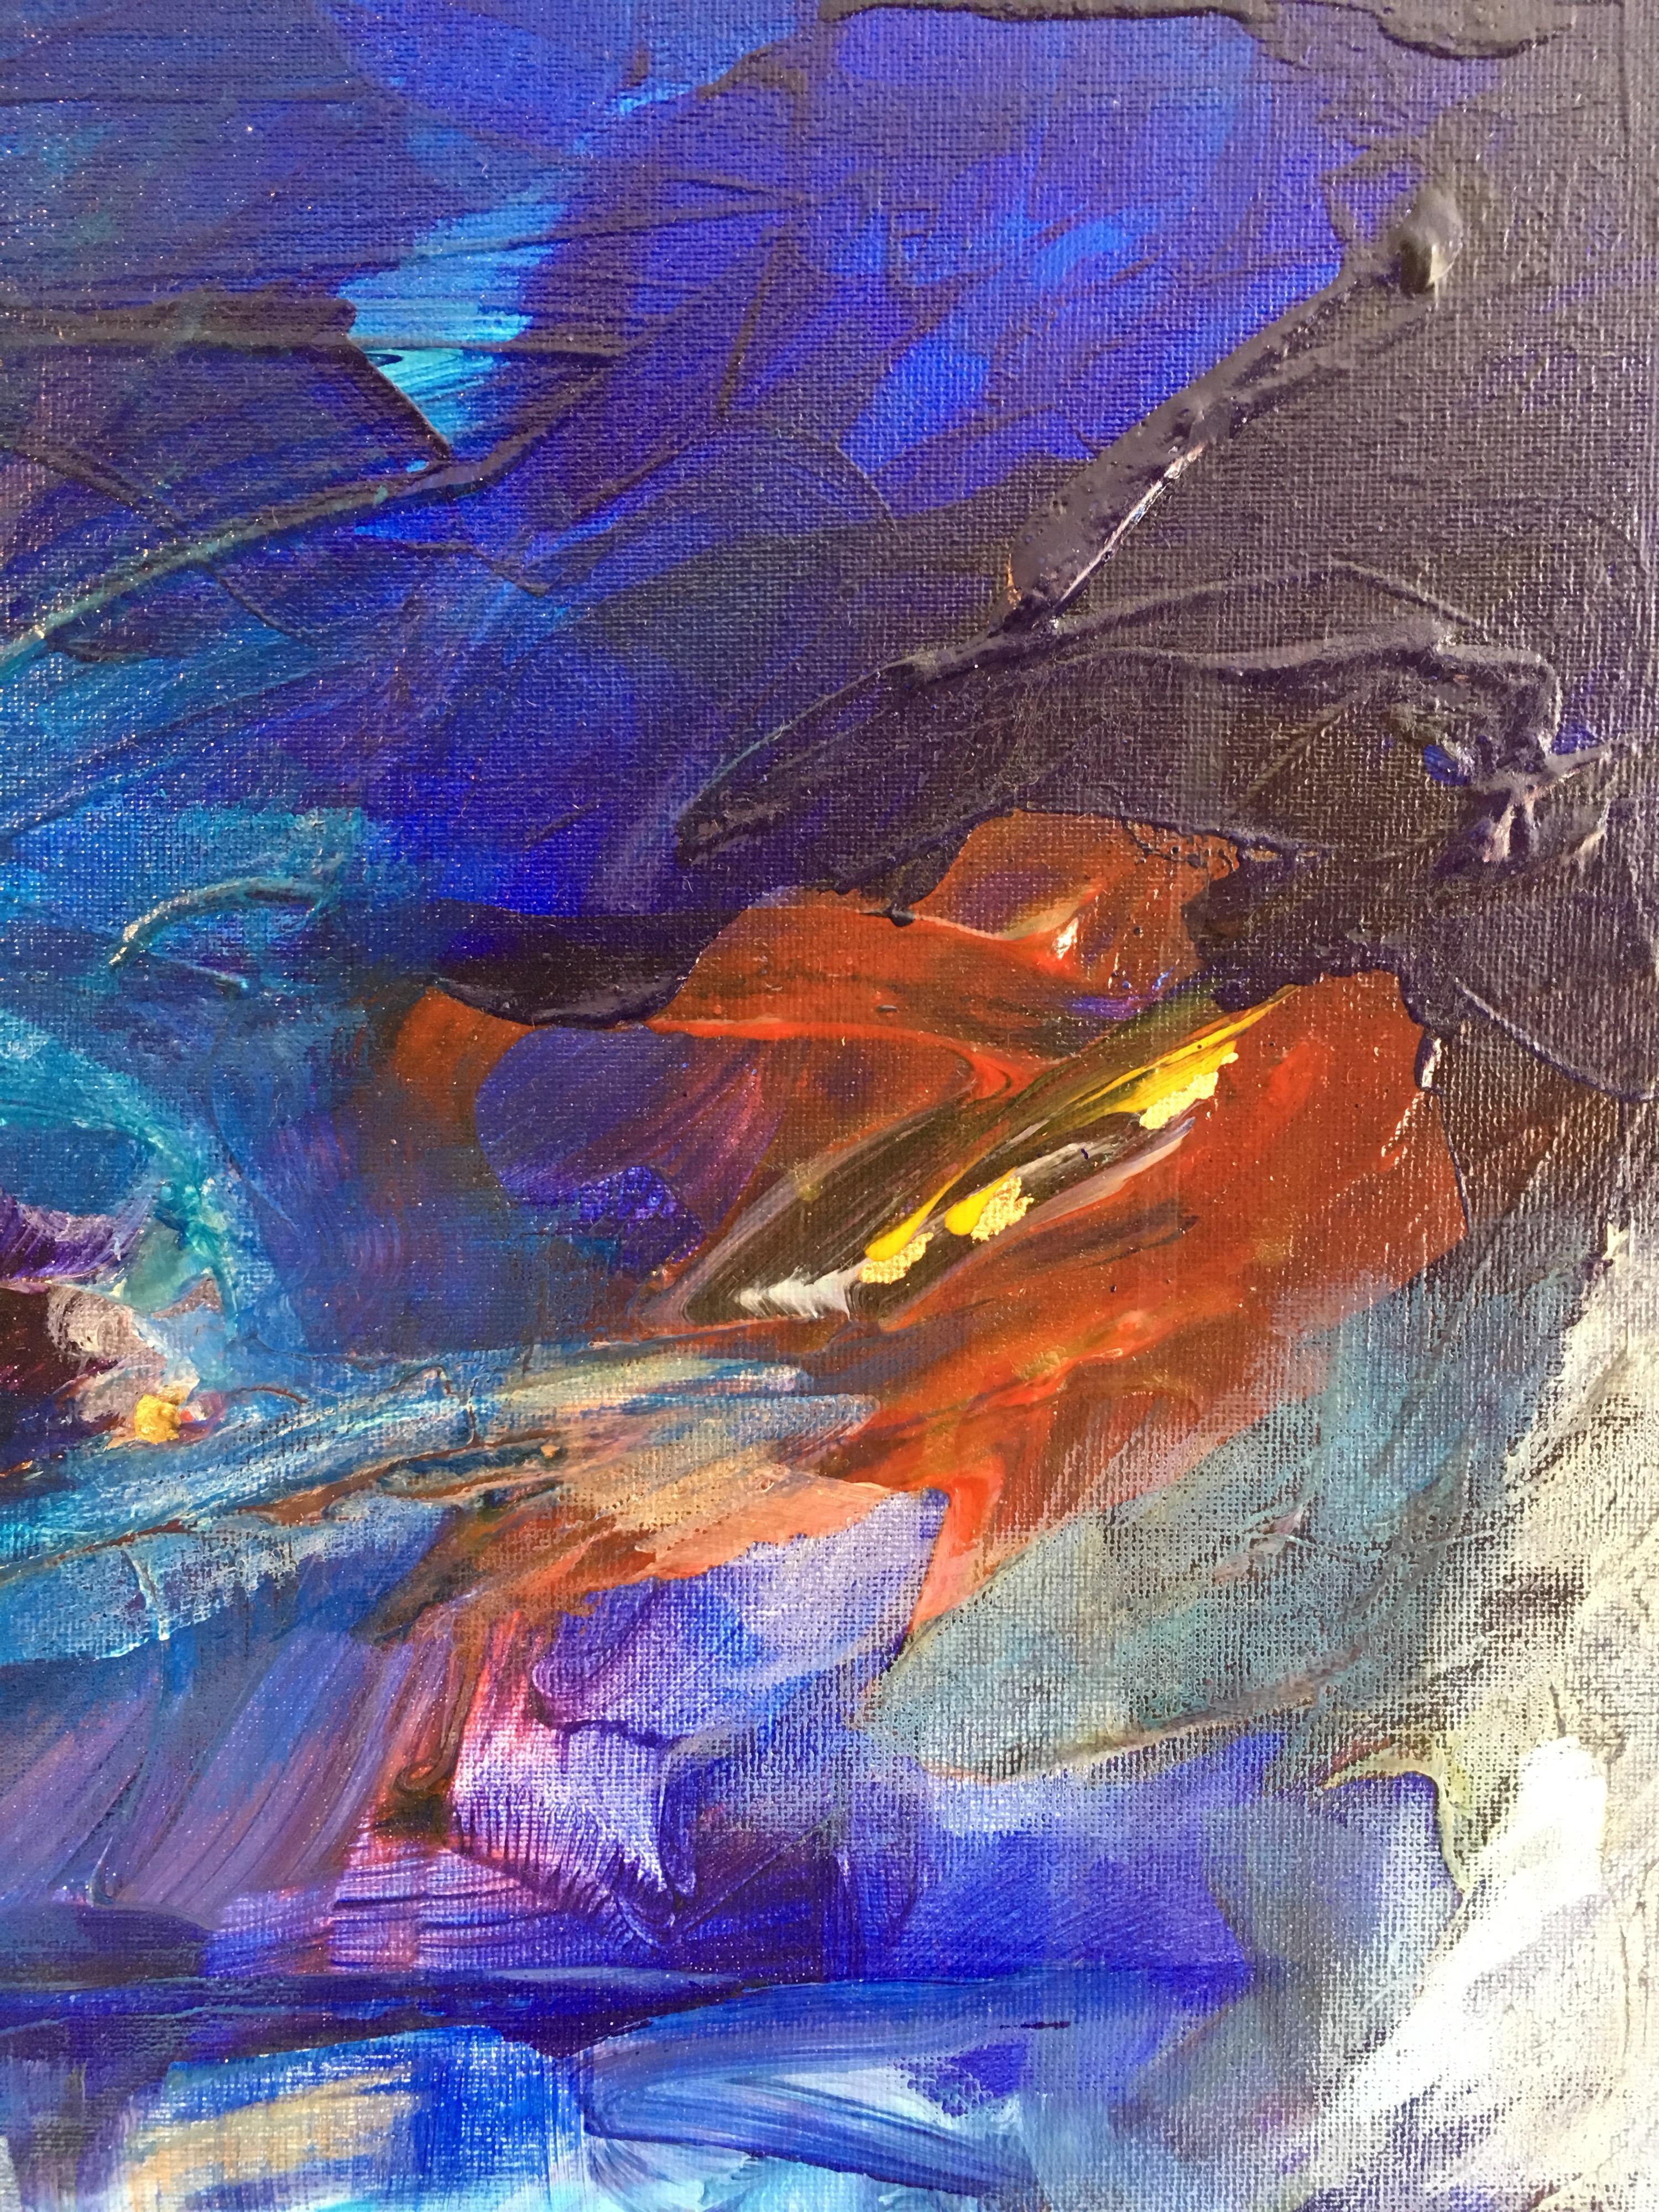 Blaue Welt, Abstraktes Ölgemälde, Signiert
Von Künstler der britischen Schule, 21. Jahrhundert
Undeutlich signiert in der hinteren oberen Ecke
Ölgemälde auf Leinwand, ungerahmt
Größe der Leinwand: 23 x 19,5 Zoll

Unbestreitbar stilvolles, abstraktes